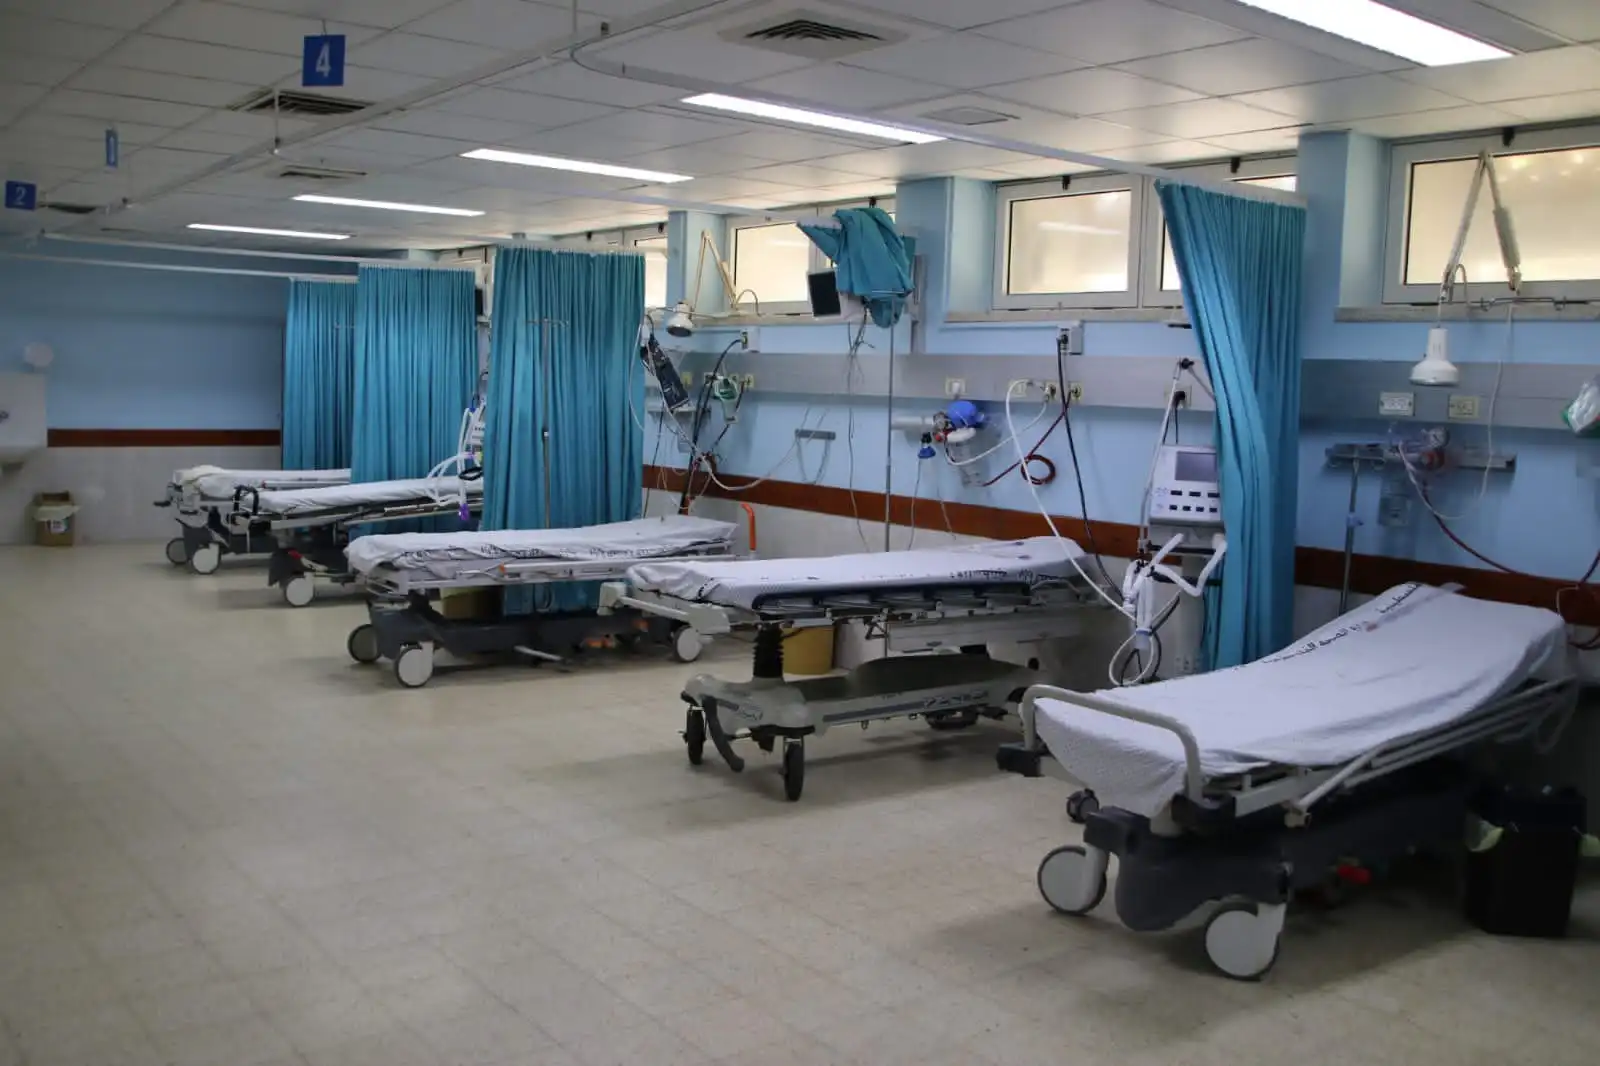 العقاد: تقرر وقف العمليات الجراحية والاكتفاء بتقديم الخدمات الطارئة بالمستشفى الأوروبي